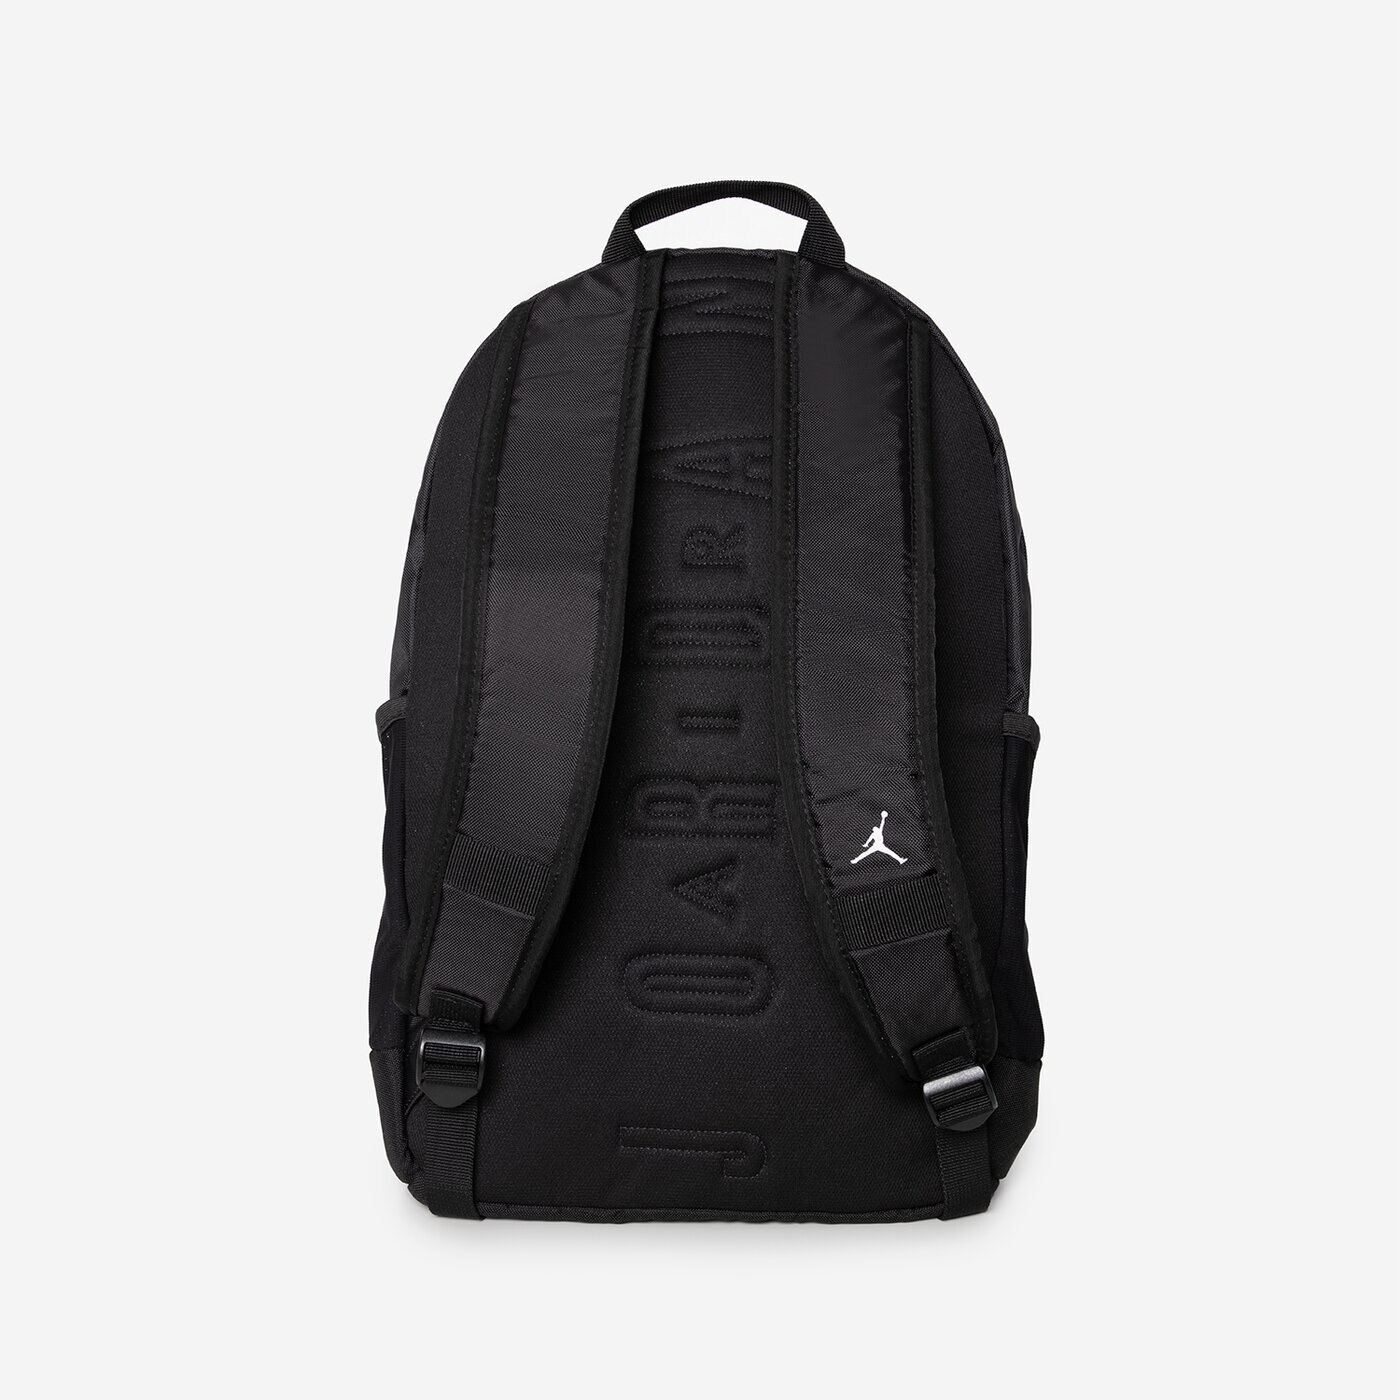 Phụ Kiện Chính Hãng - Balo Jordan Backpack Black - 9A0692-023